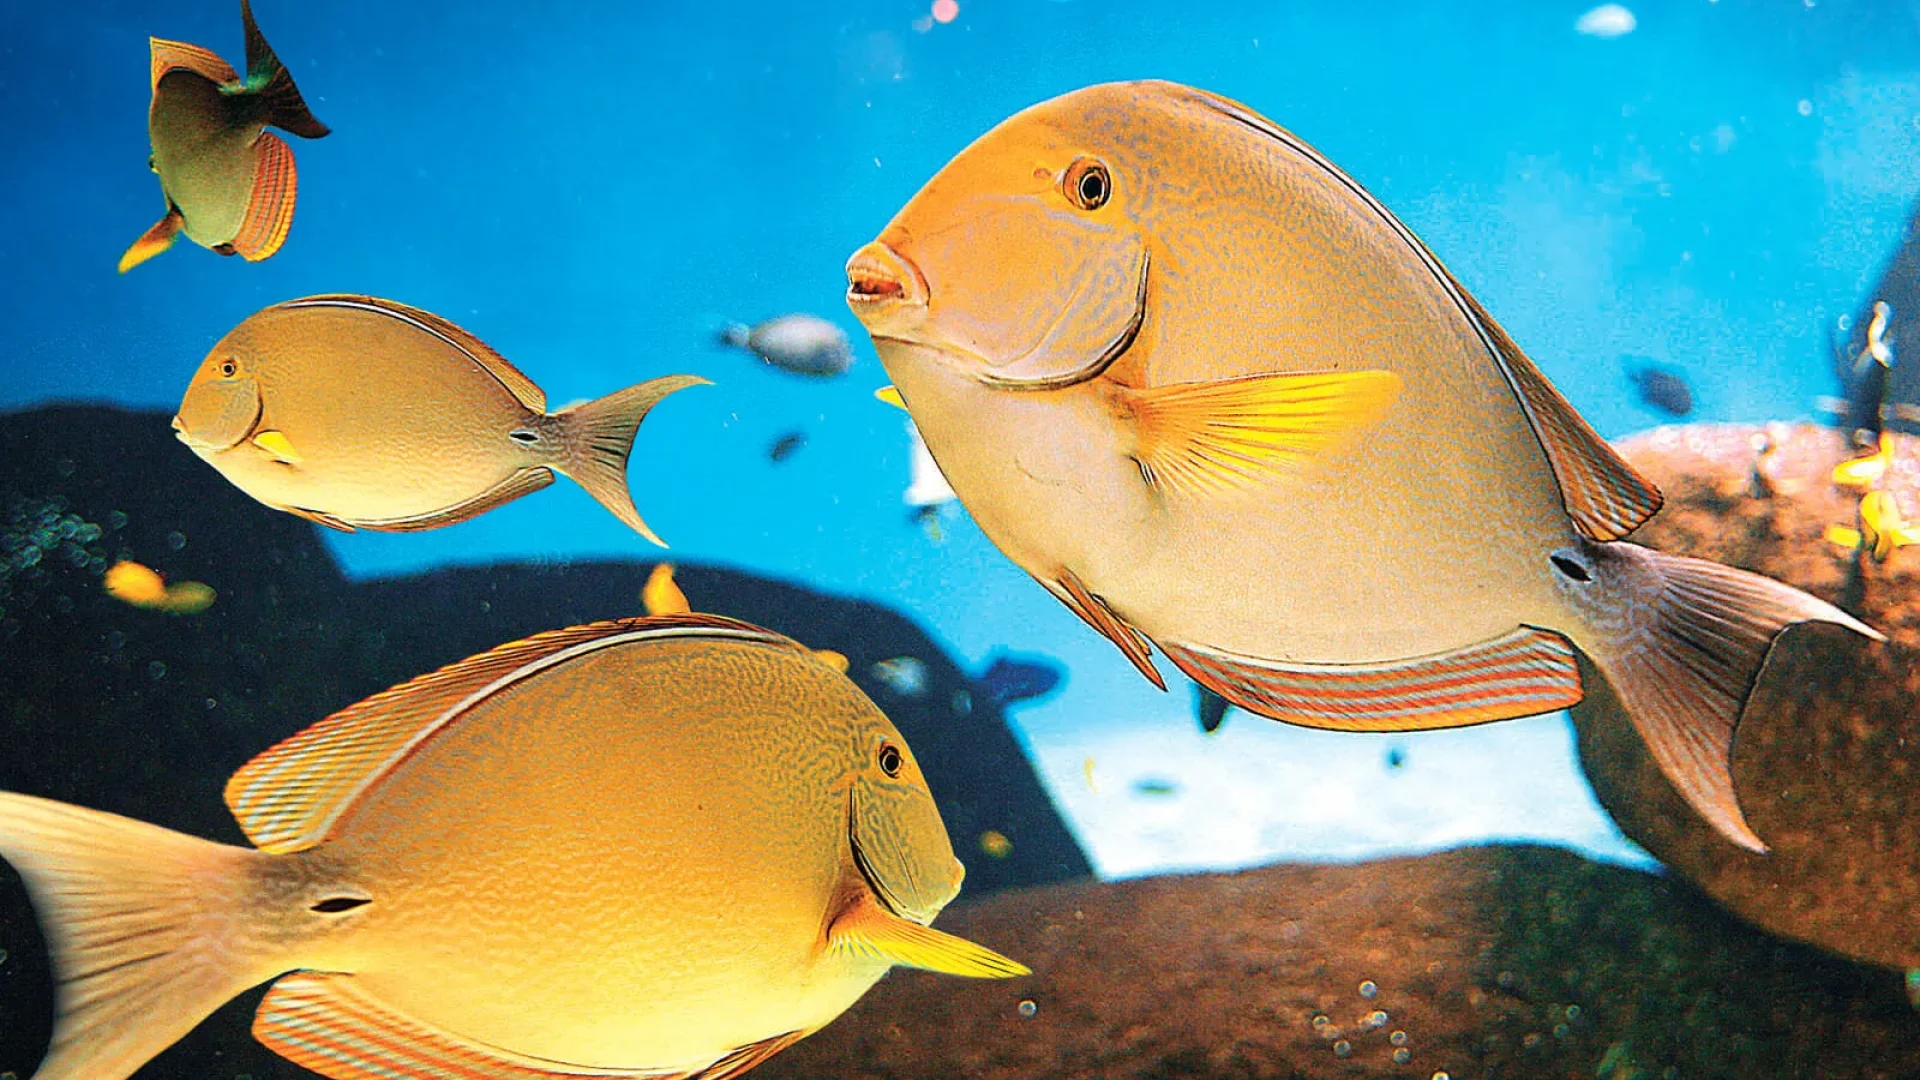 Fish in an aquarium in vendée